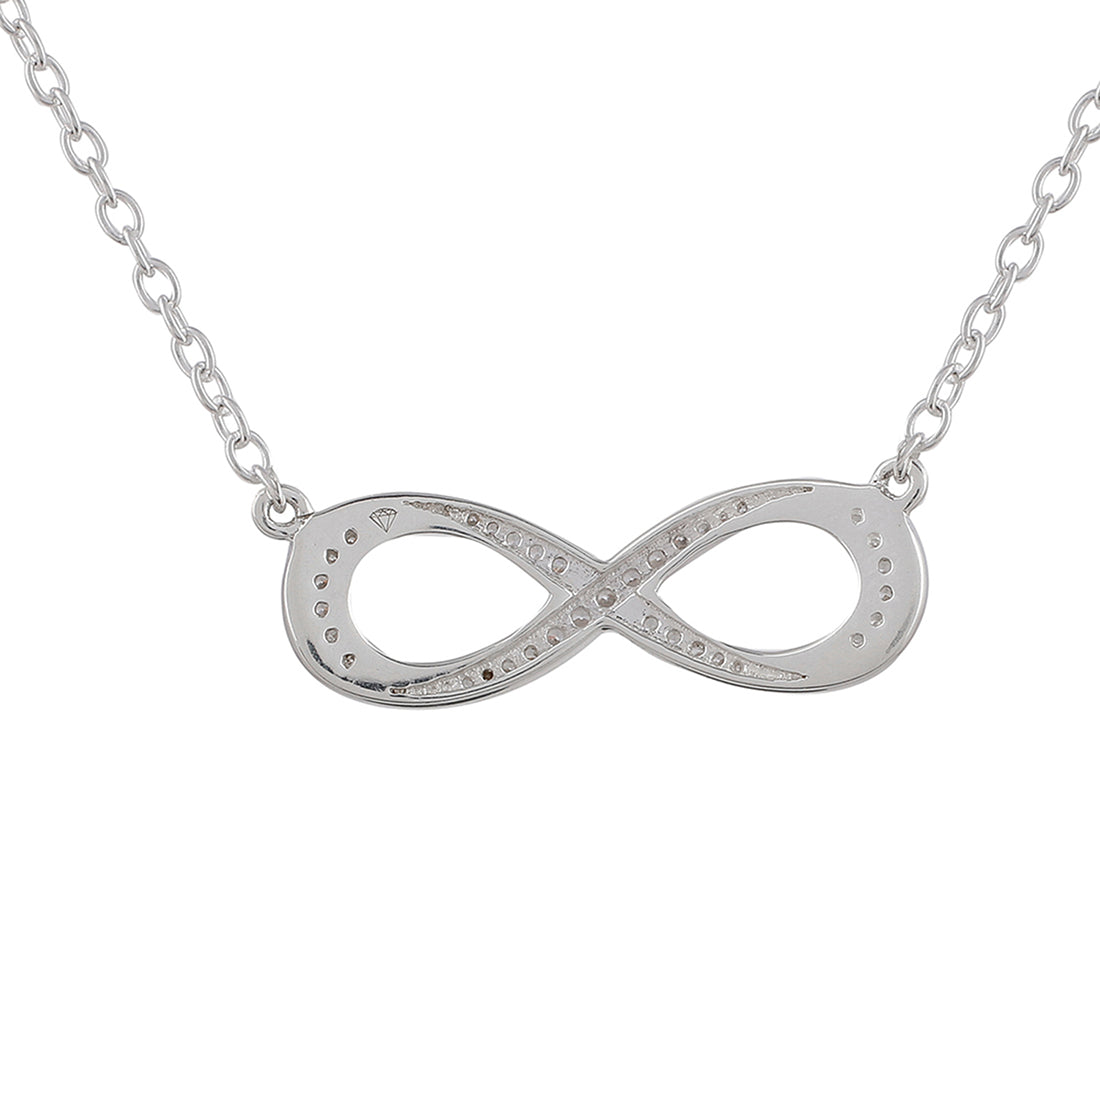 925 Sterling Silver CZ Gem Studded Infinity Necklace